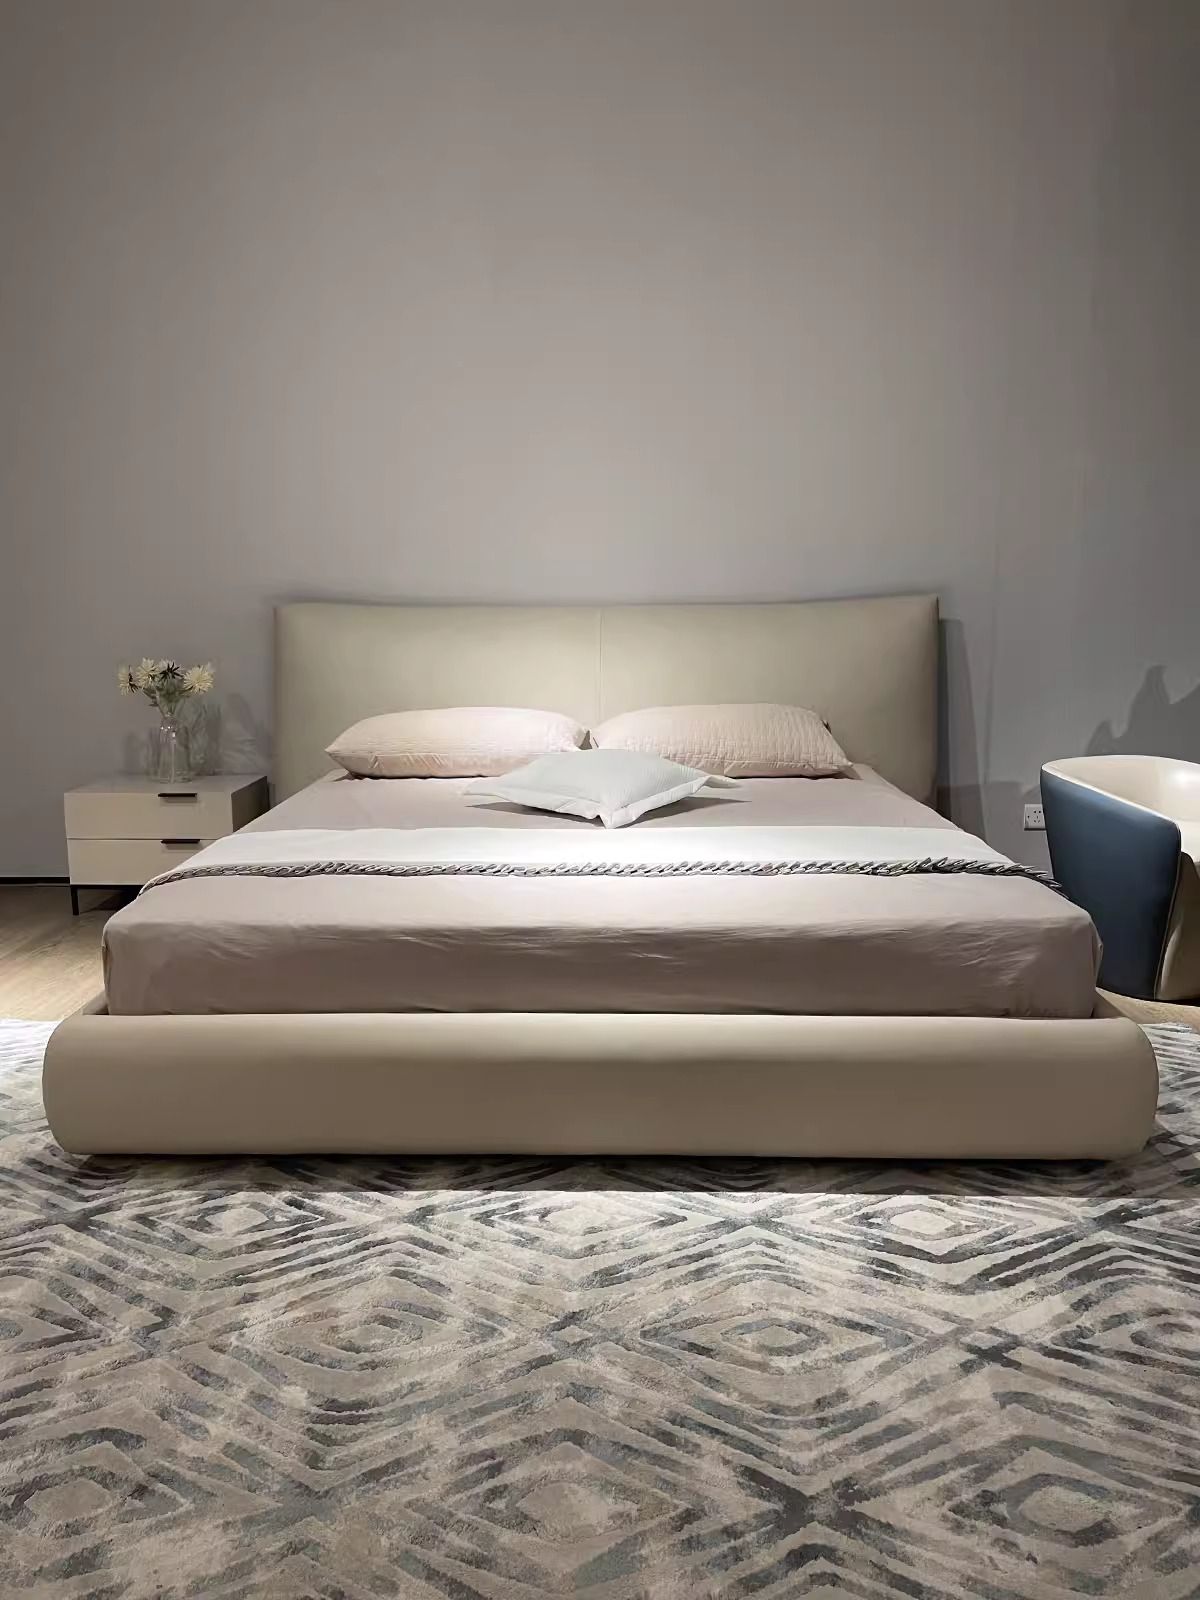 The COLSTA by Romatti bed